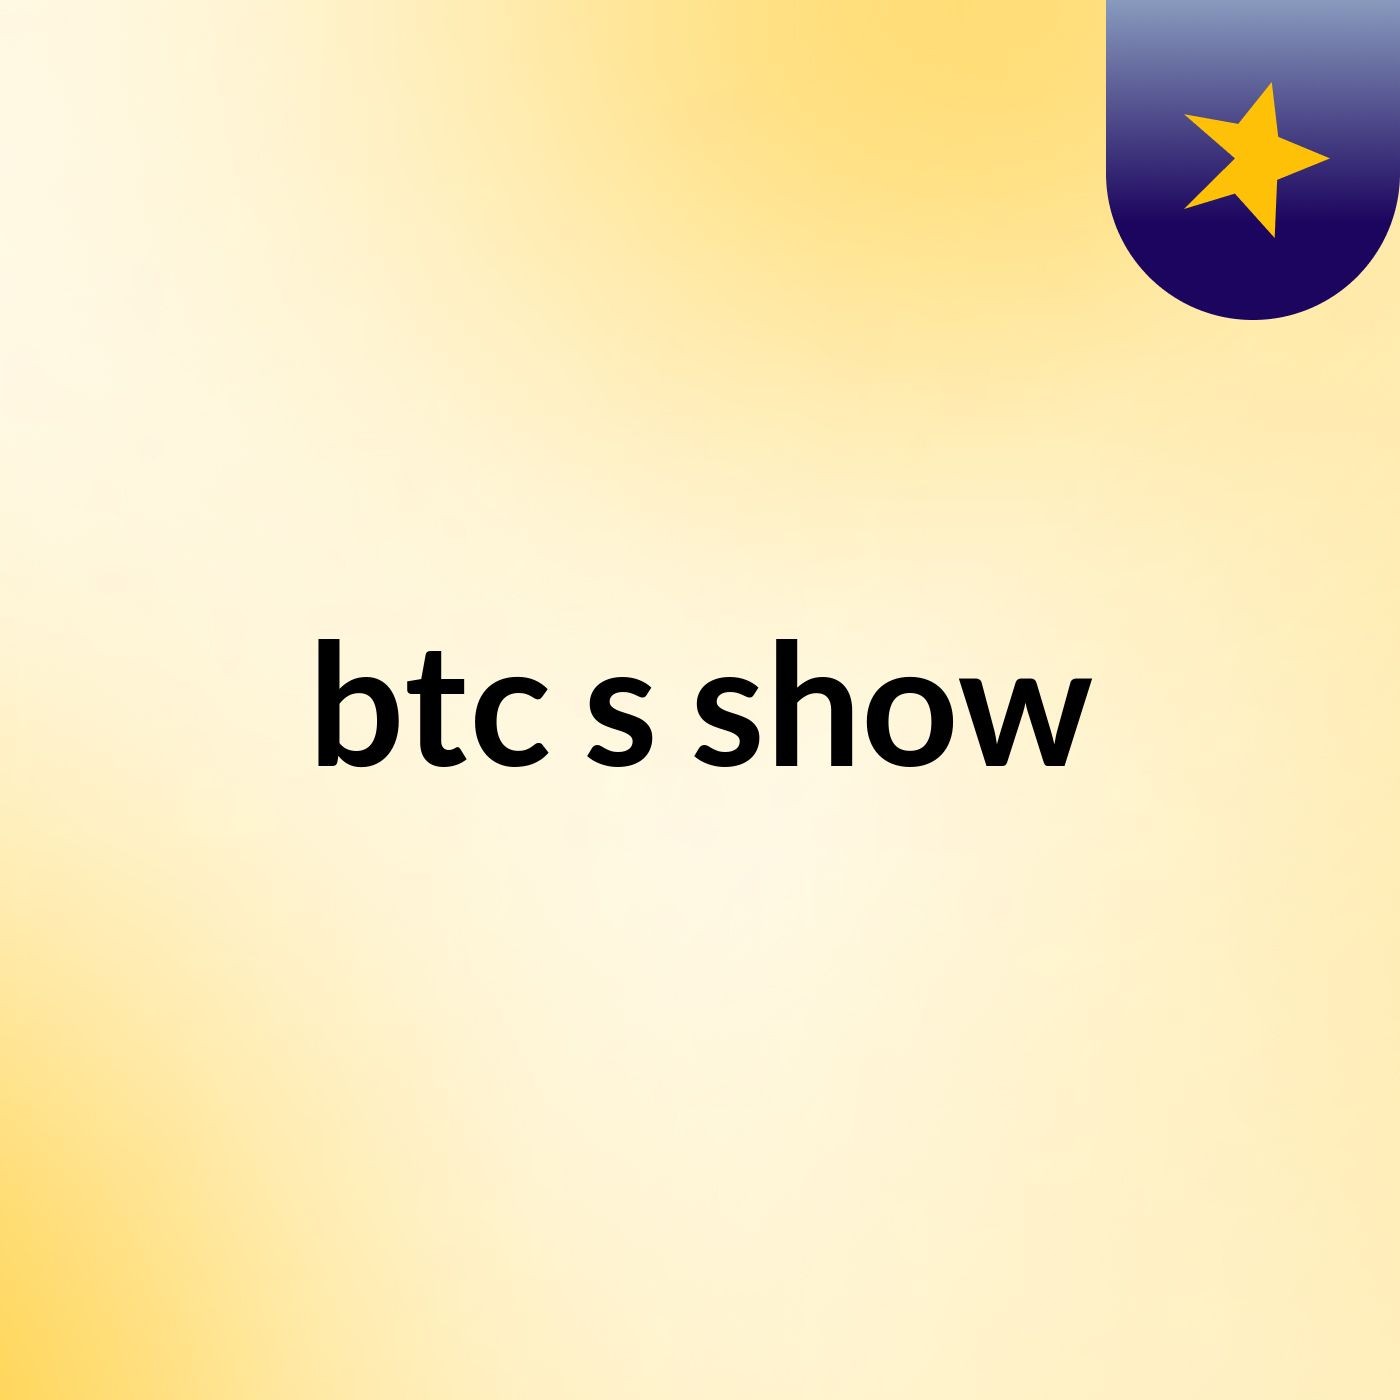 btc's show